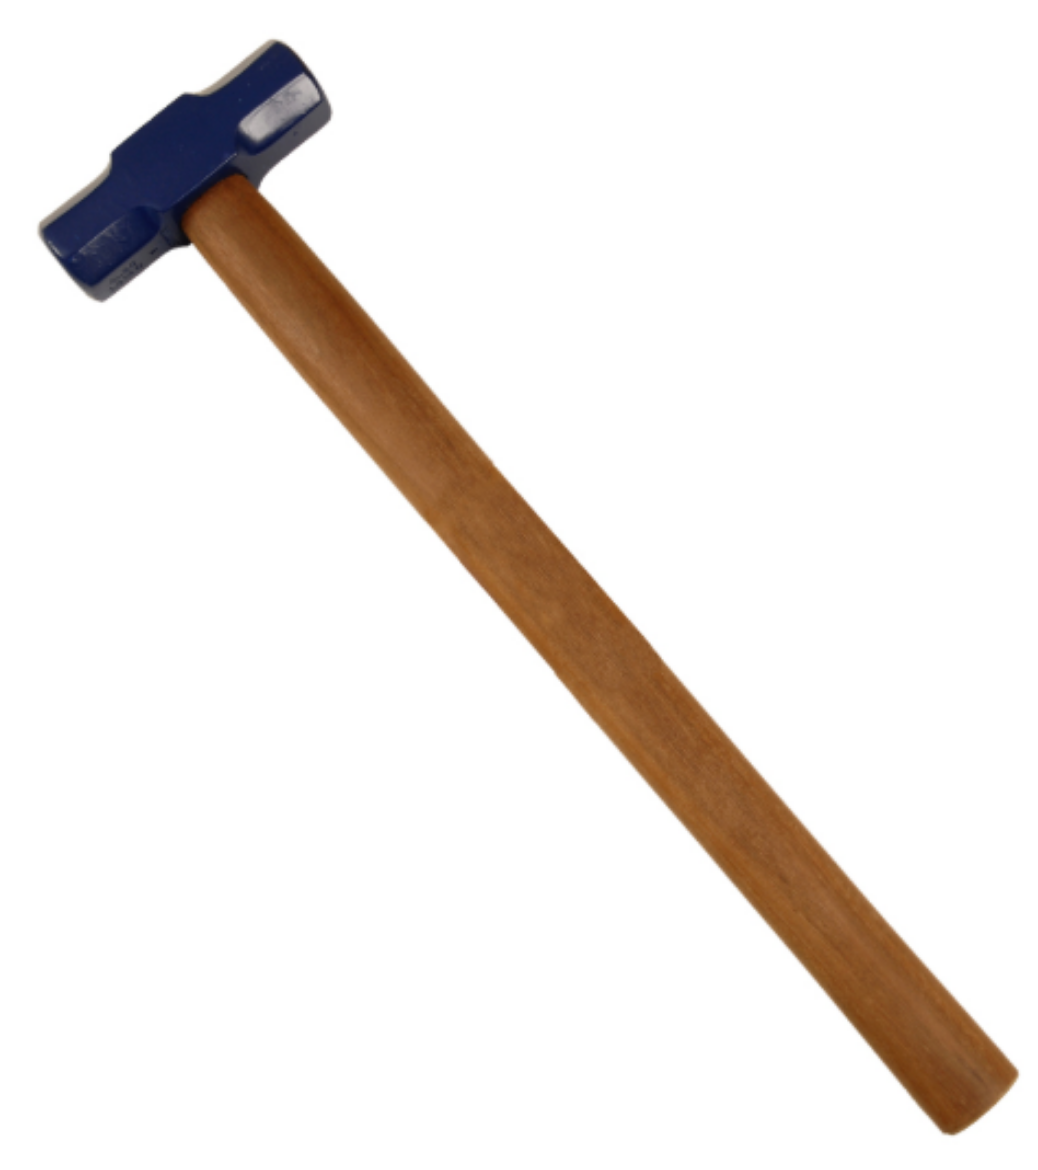 Picture of Sledge Hammer 7lb/3.1kg, Hardwood Handle 750mm